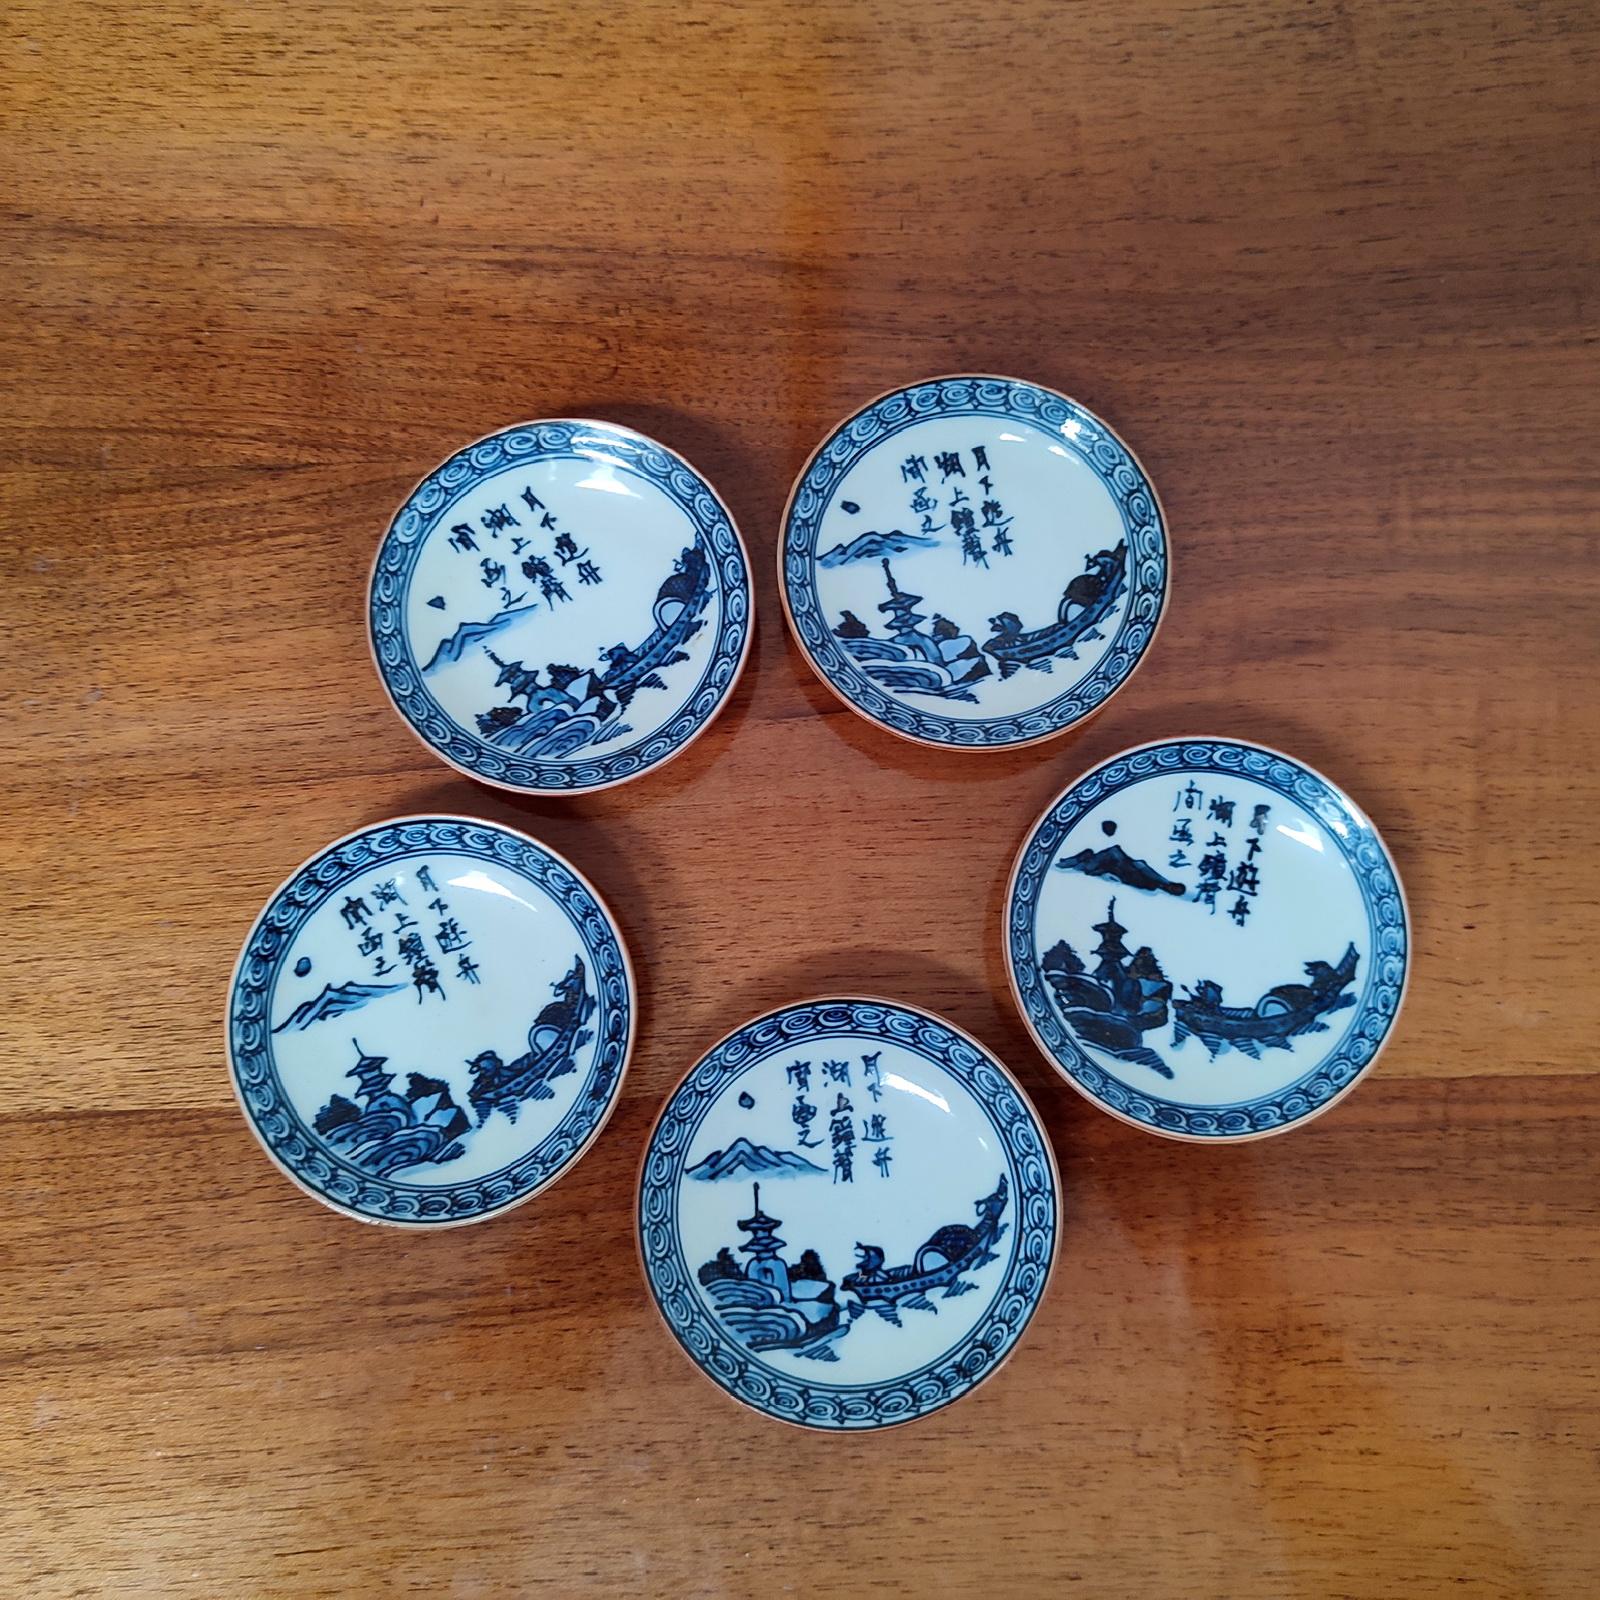 Ensemble de cinq soucoupes en porcelaine chinoise, peintes en bleu. Chacun porte une marque sur le fond, sous la glaçure.
En parfait état.
Dimensions : Diamètre 9,5 cm.